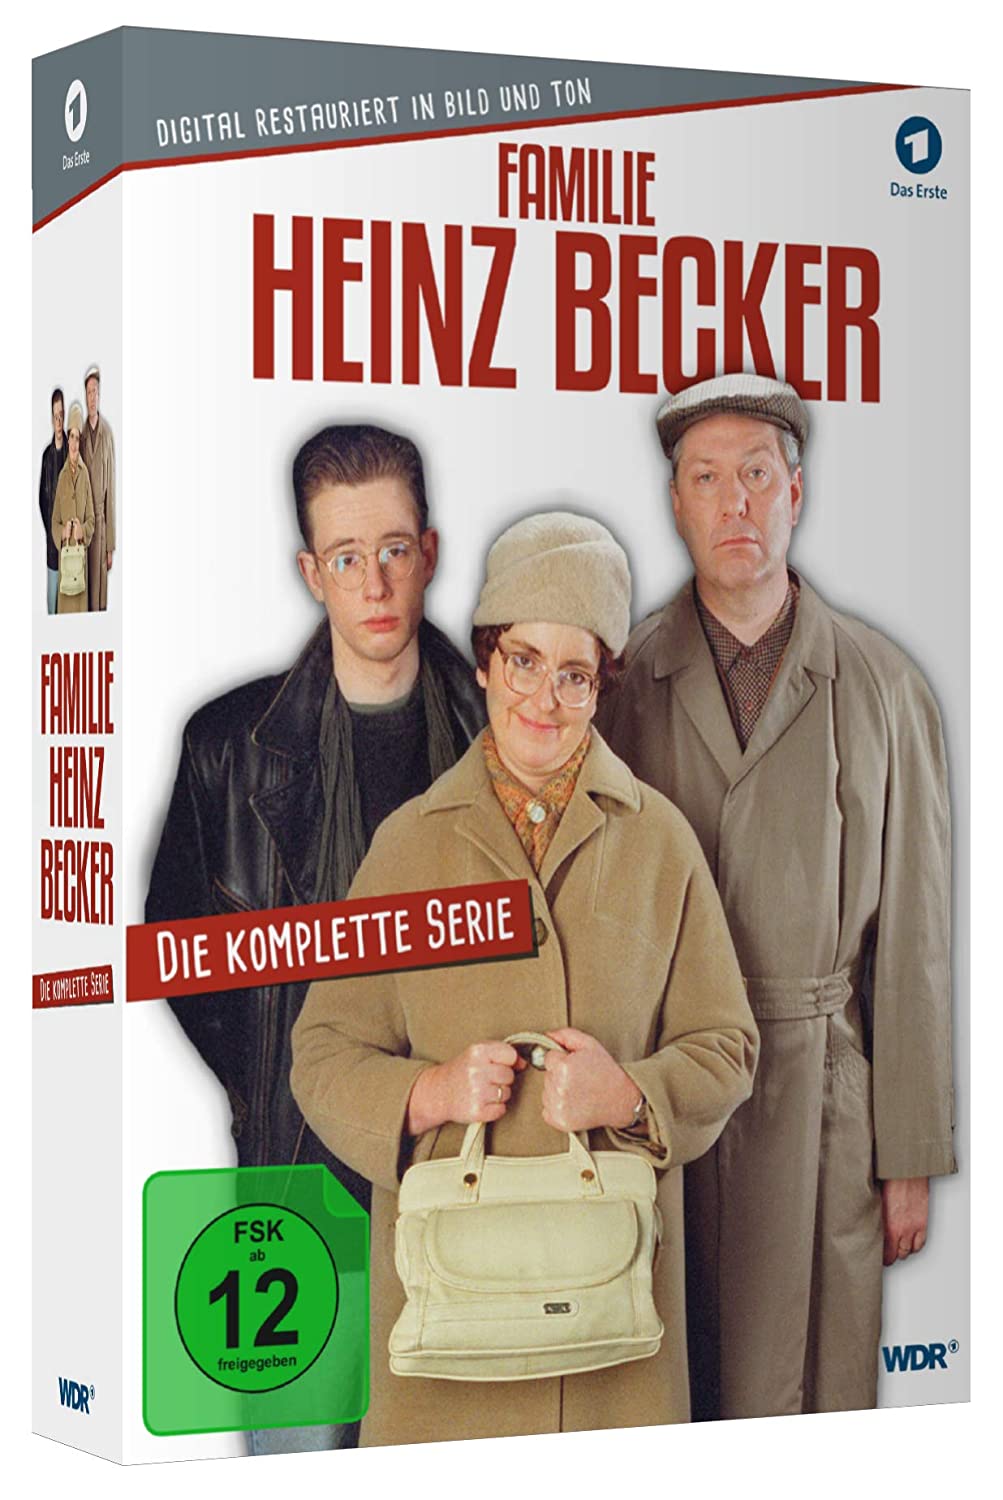 Familie Heinz Becker - Die komplette Serie - digital restauriert - 7 Discs [DVD]